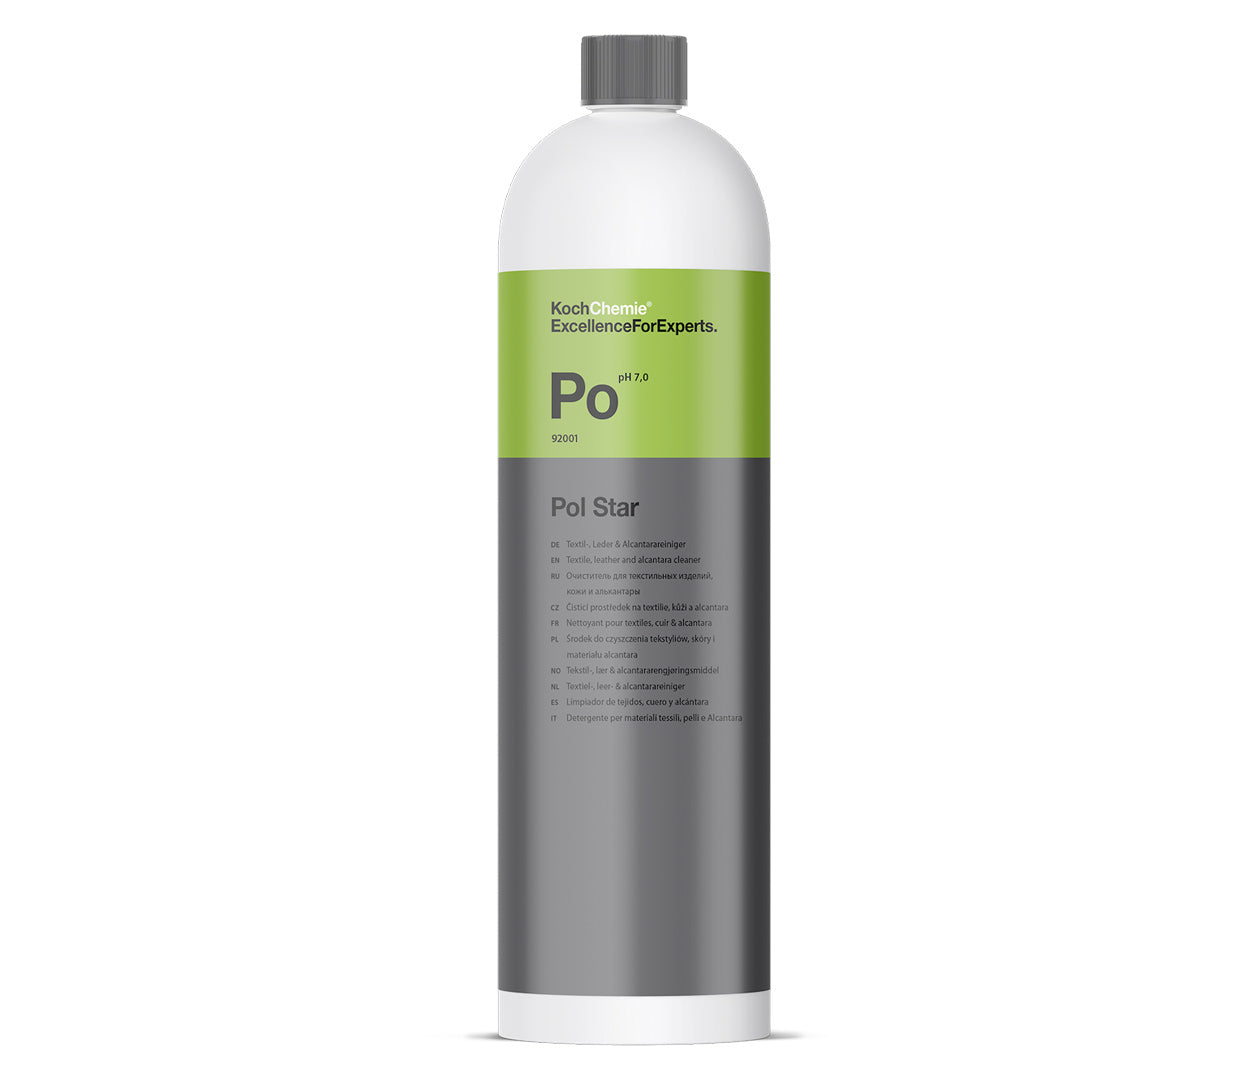 Koch Chemie - PO Pol Star